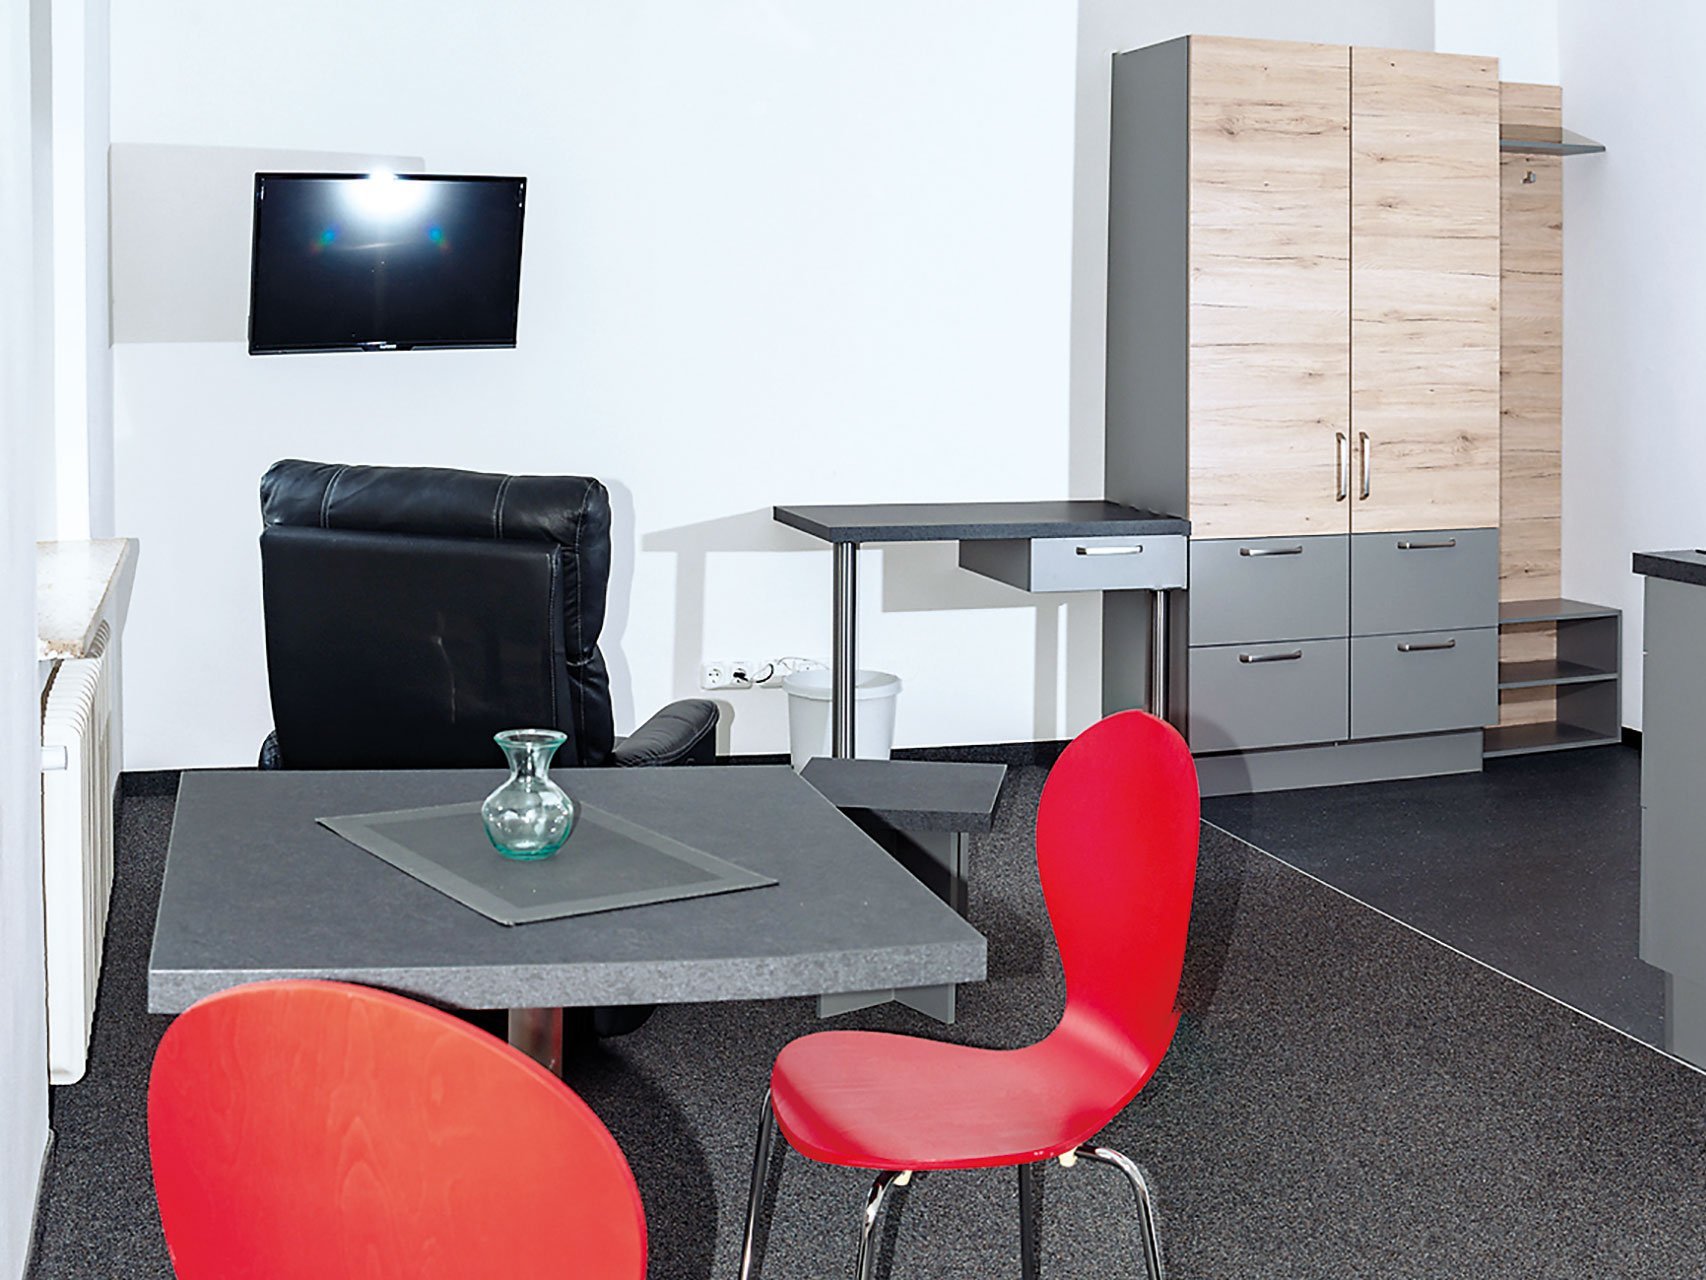 Ein funktionaler, moderner Raum mit Fernseher, einem Schrank, Ledersessel und einem Tisch mit roten Stühlen